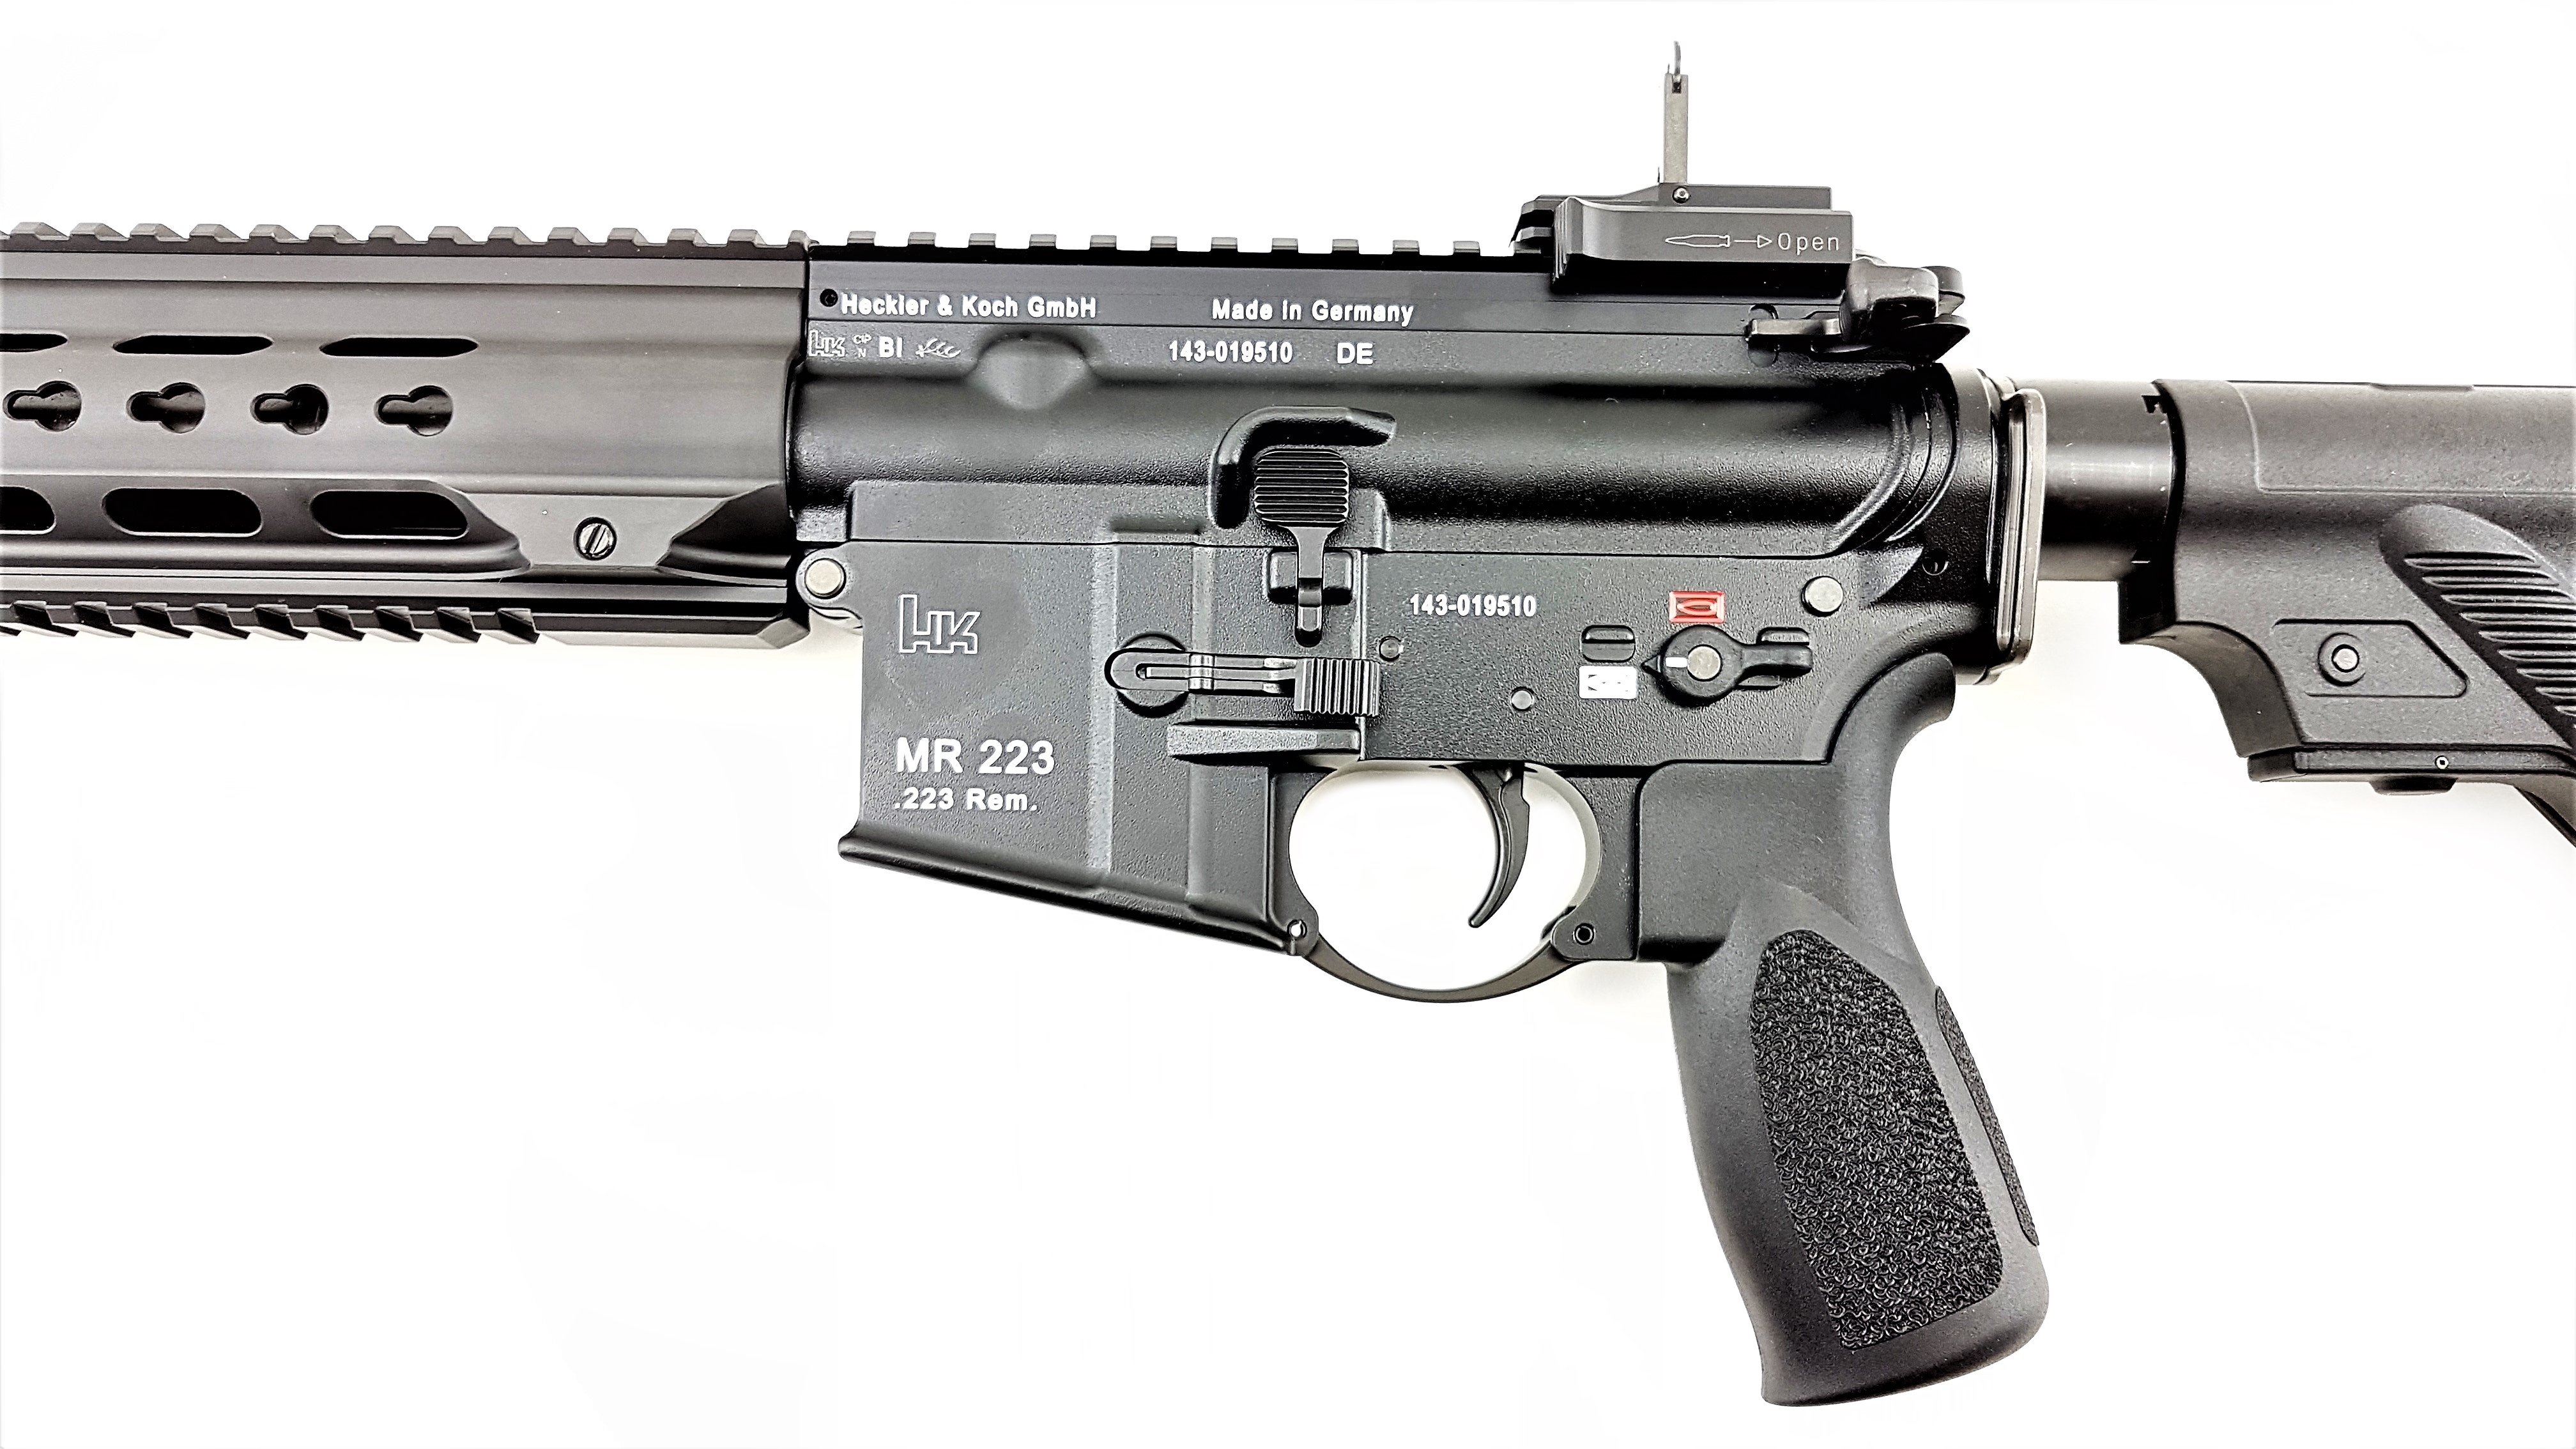 HK MR223 zivile Version des HK416 Bedienelemente | F.A.S.T. Onlineshop